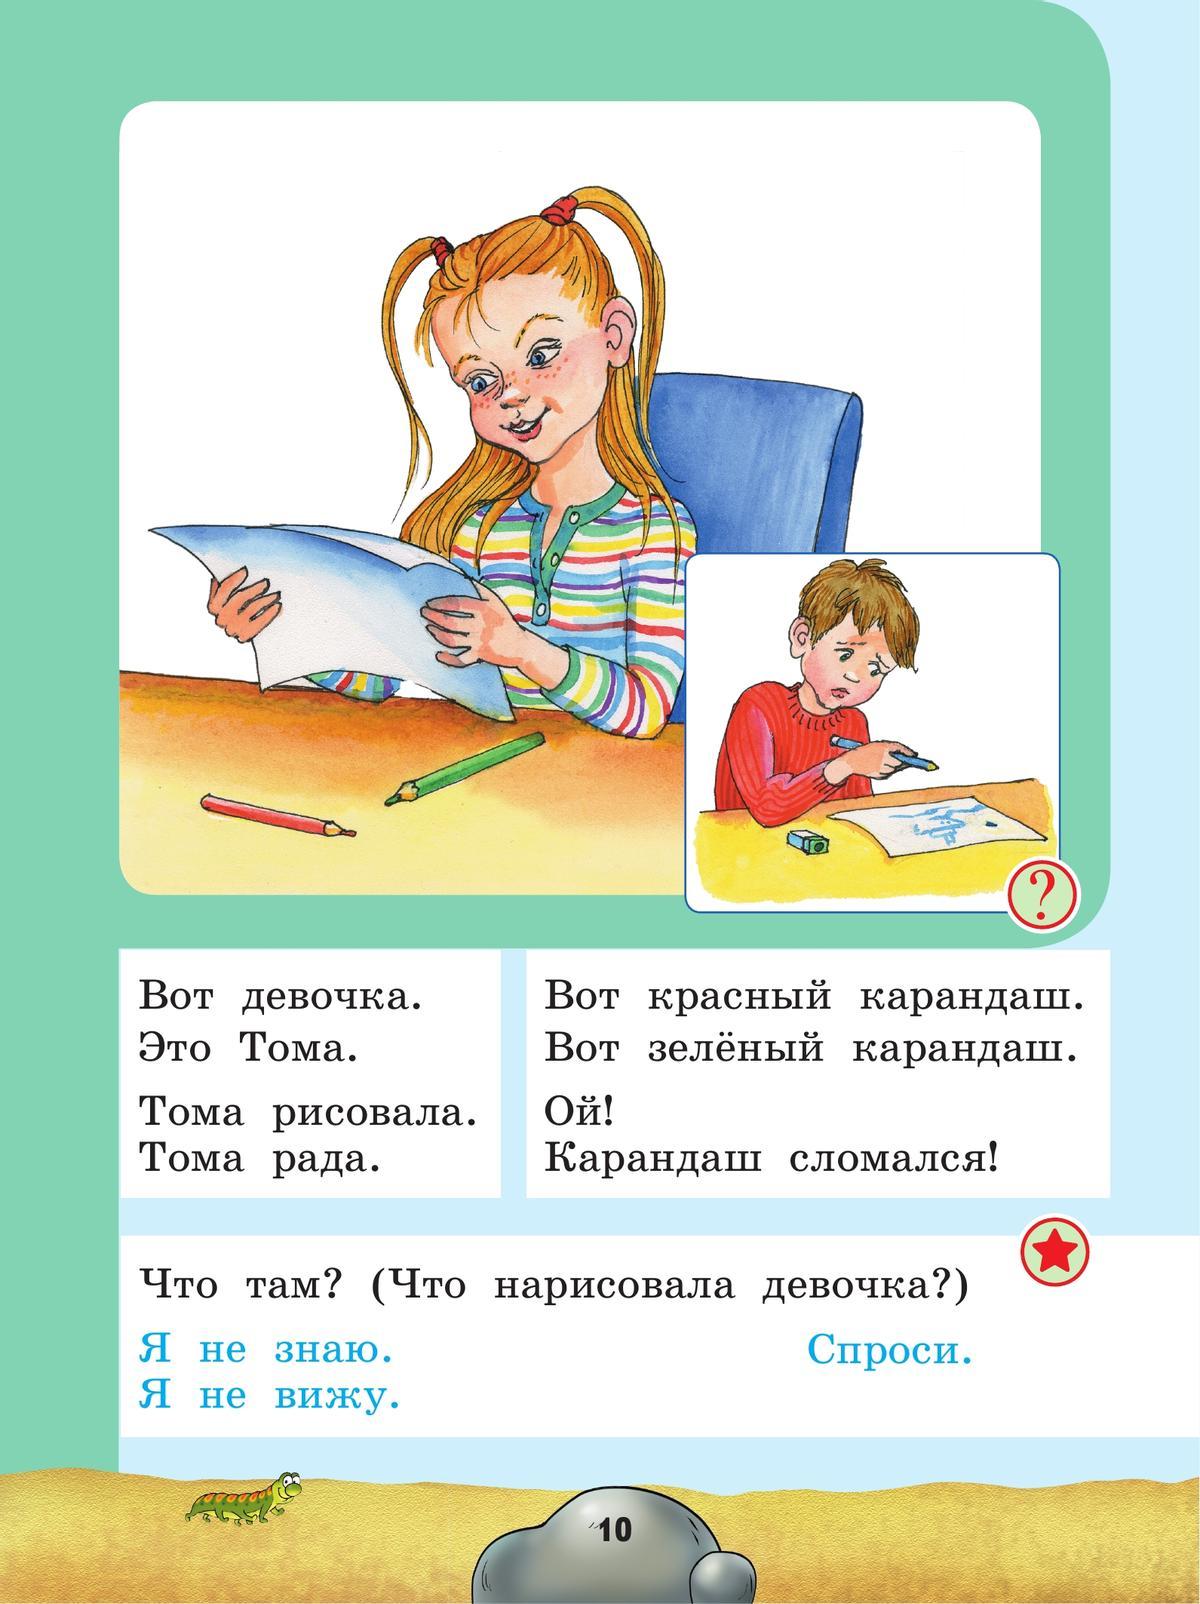 Русский язык. Развитие речи. 1 дополнительный класс. Учебник. (для глухих обучающихся) 9